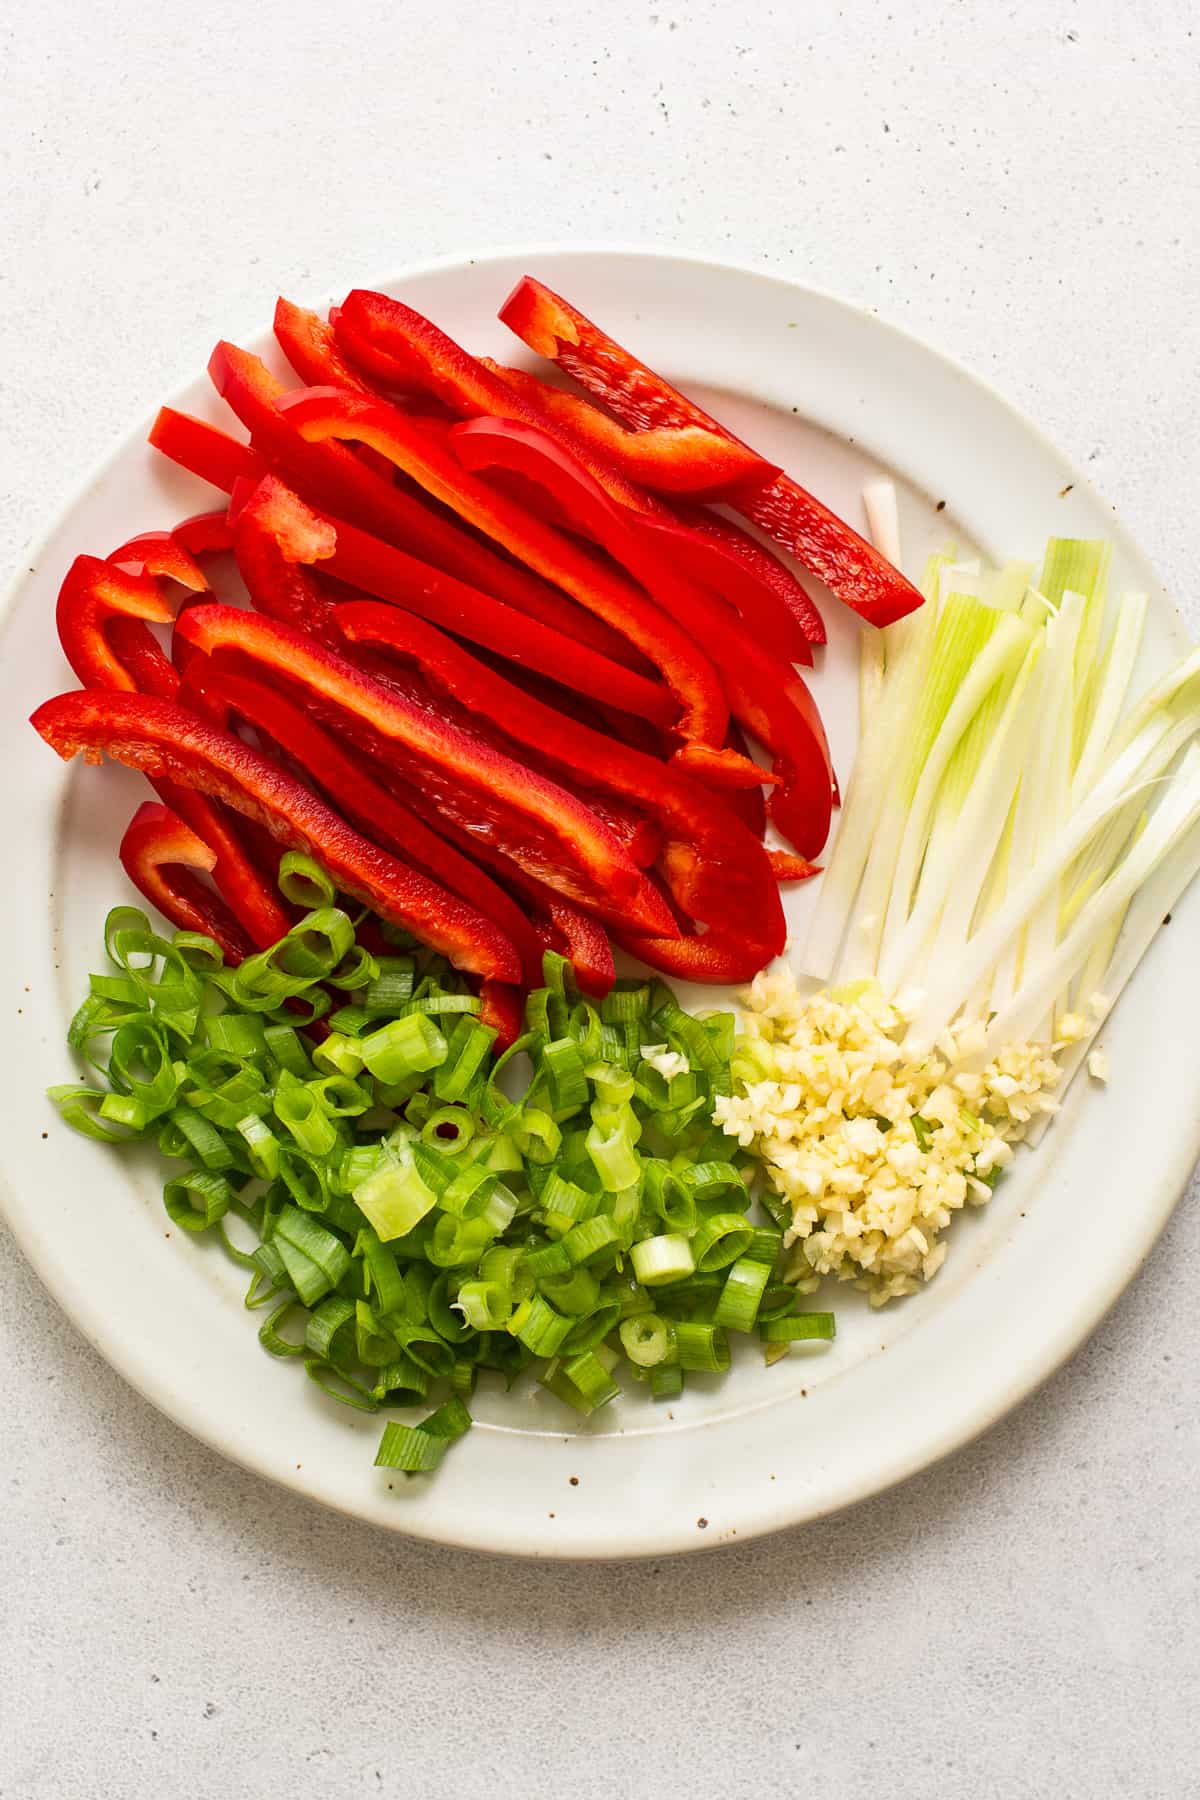 λαχανικά σε φέτες σε πιατέλα.